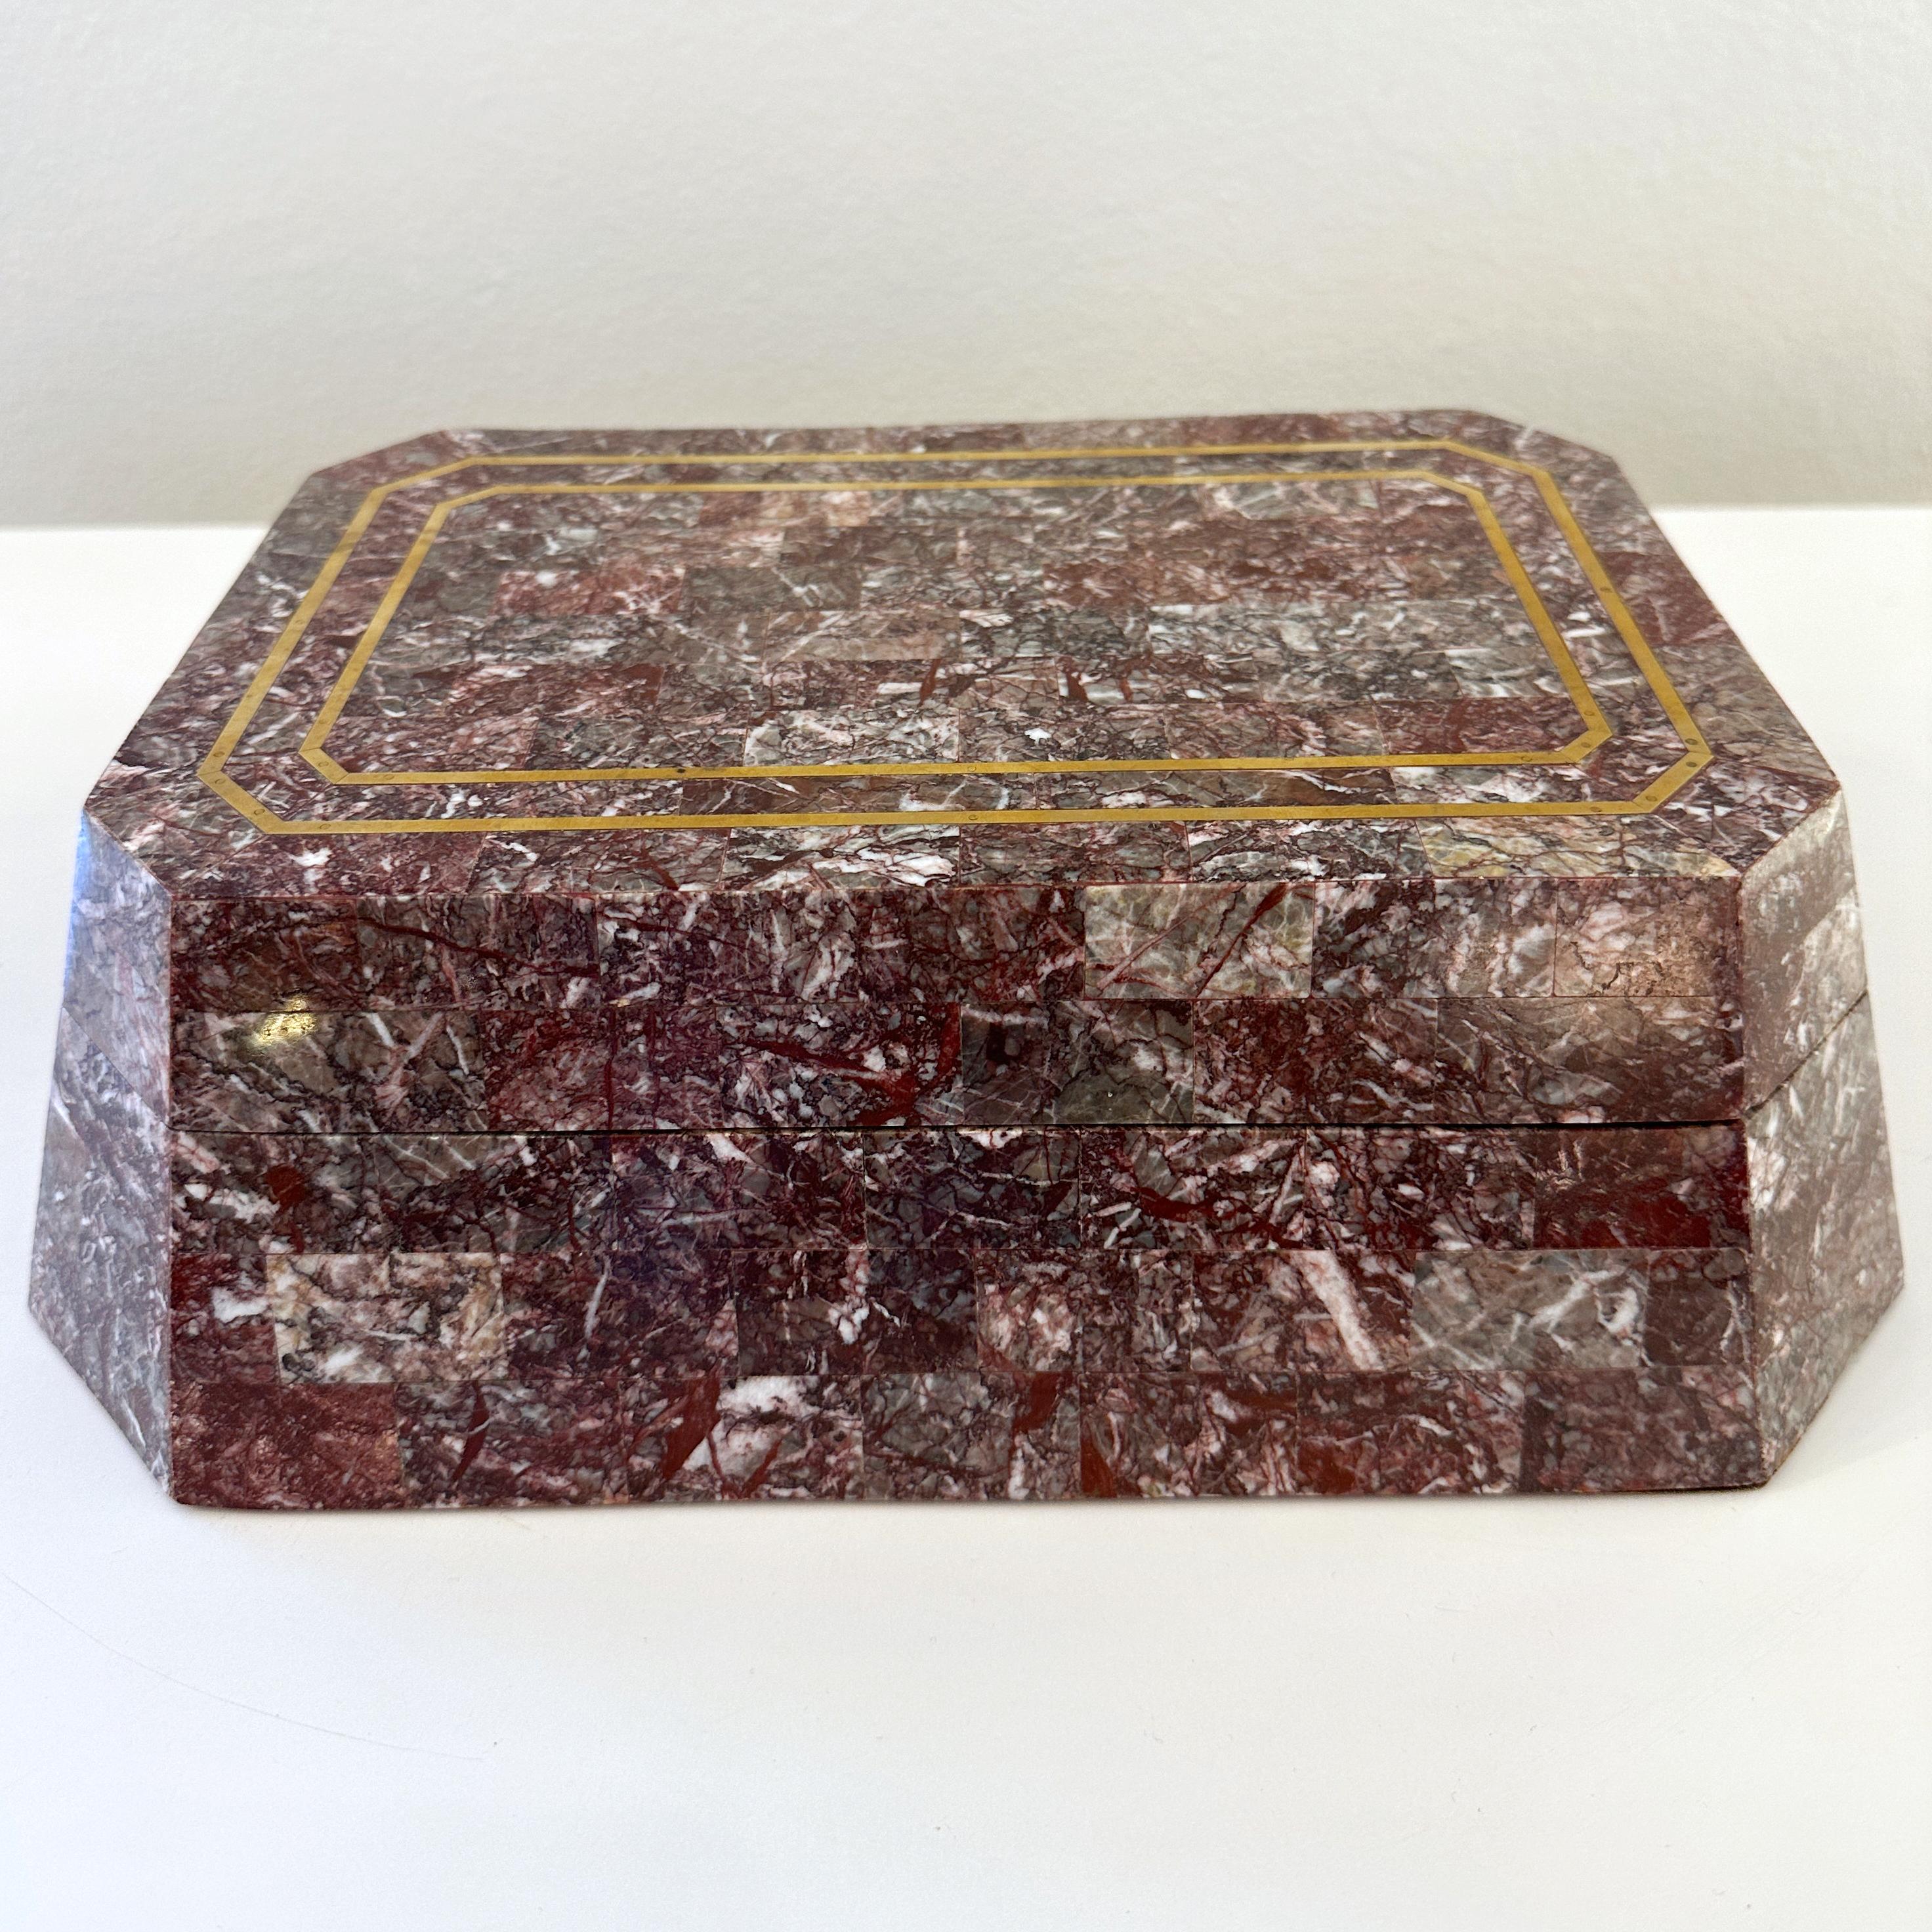 Exquise boîte en marbre Rosso Levanto tessellé de Maitland Smith, vers les années 1990. 

Cette boîte octogonale à faces inclinées est revêtue d'un magnifique marbre rosso levanto tesselé et rehaussé d'une incrustation de laiton sur le dessus du